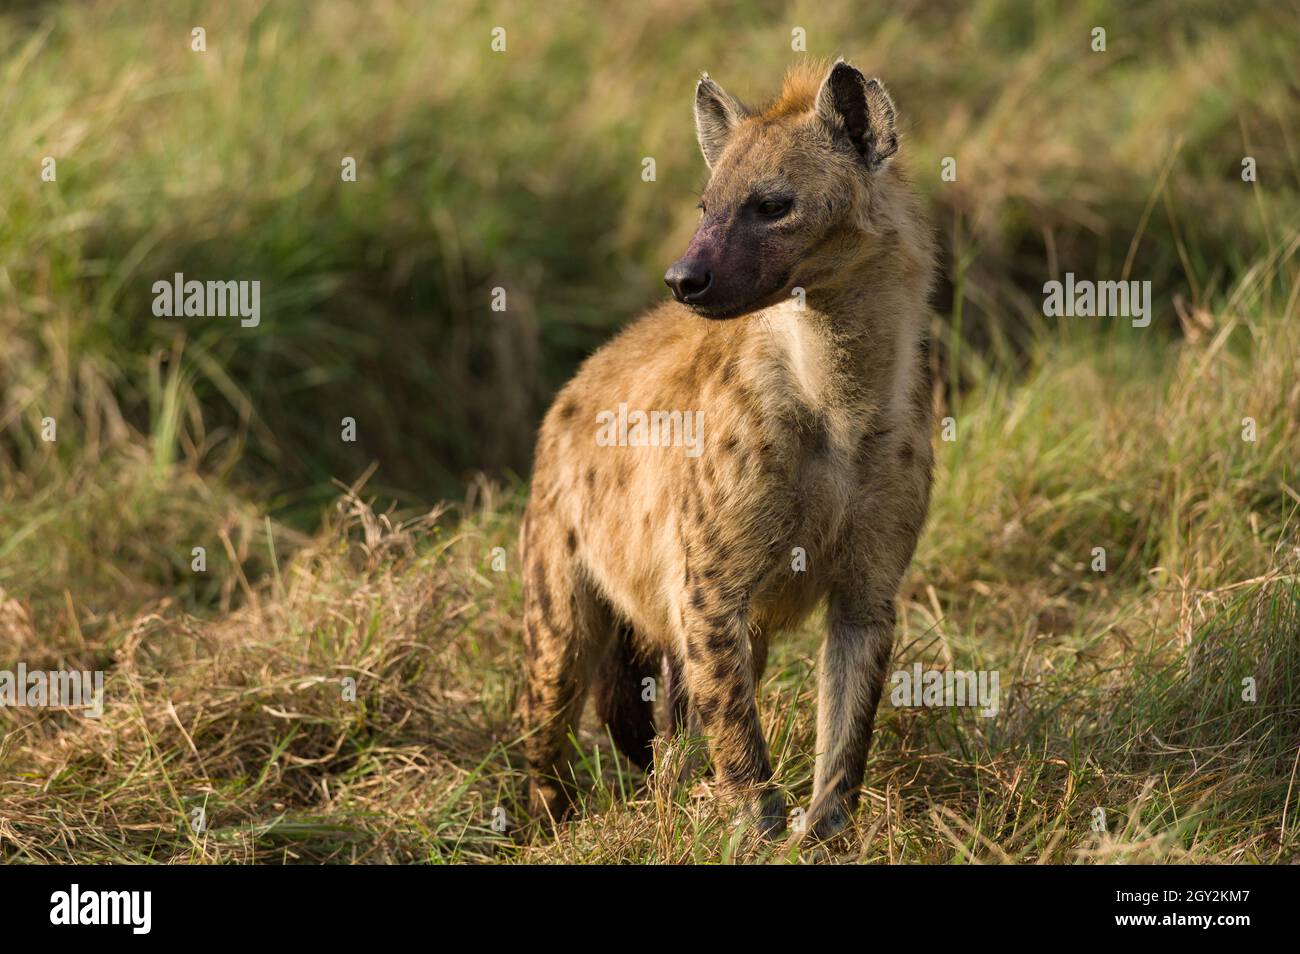 Spotted Hyena (Hyaenidae) standing looking at surroundings, Maasai Mara, Kenya Stock Photo